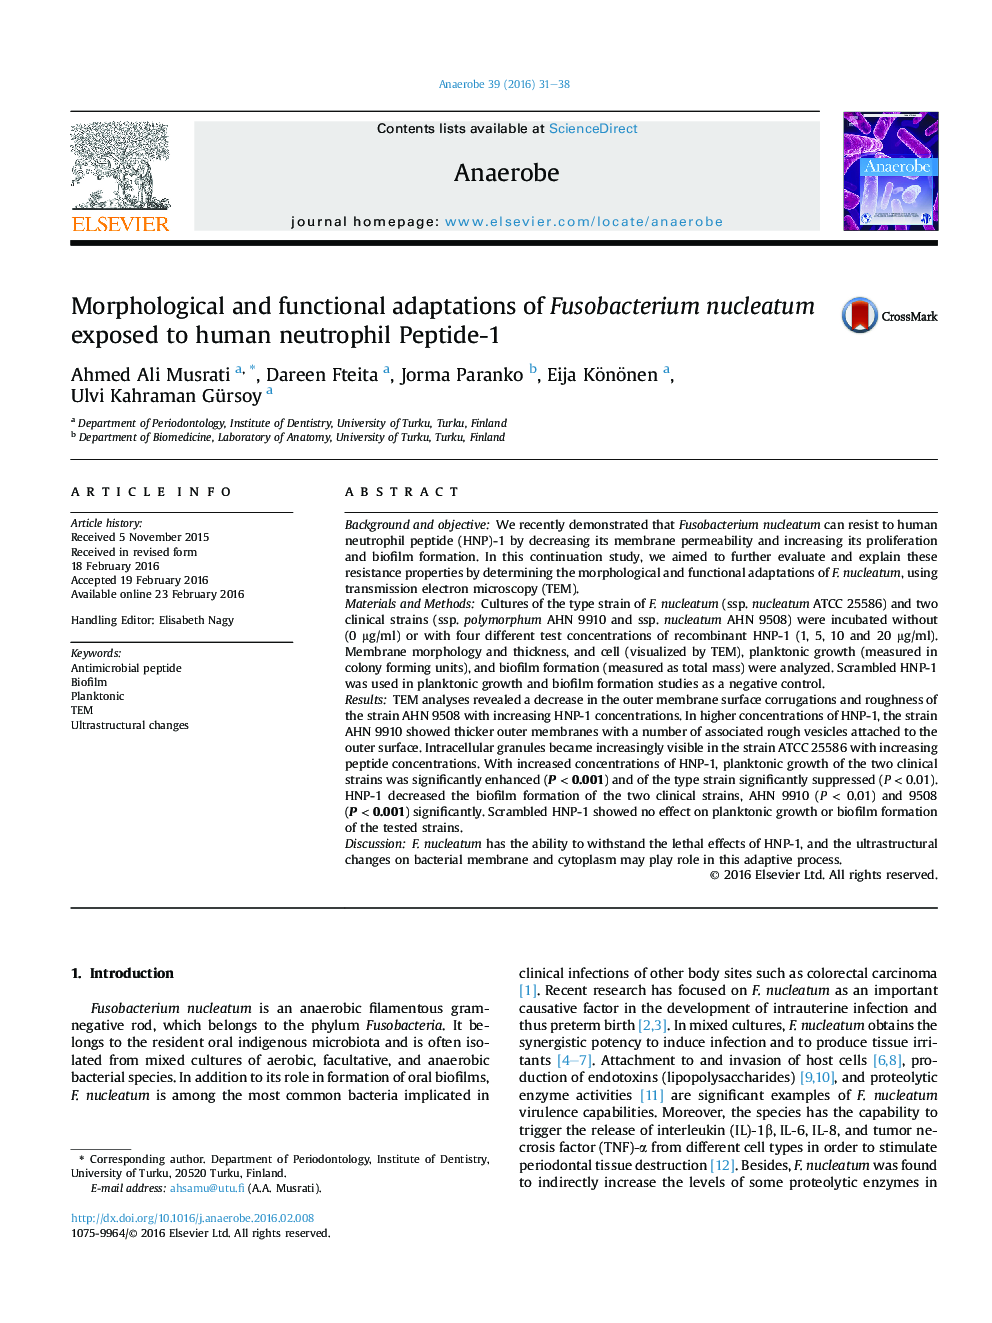 سازگاری های مورفولوژیک و عملکردی هسته فوزوباکتریوم در معرض نوتروفیل انسان پپتید-1 